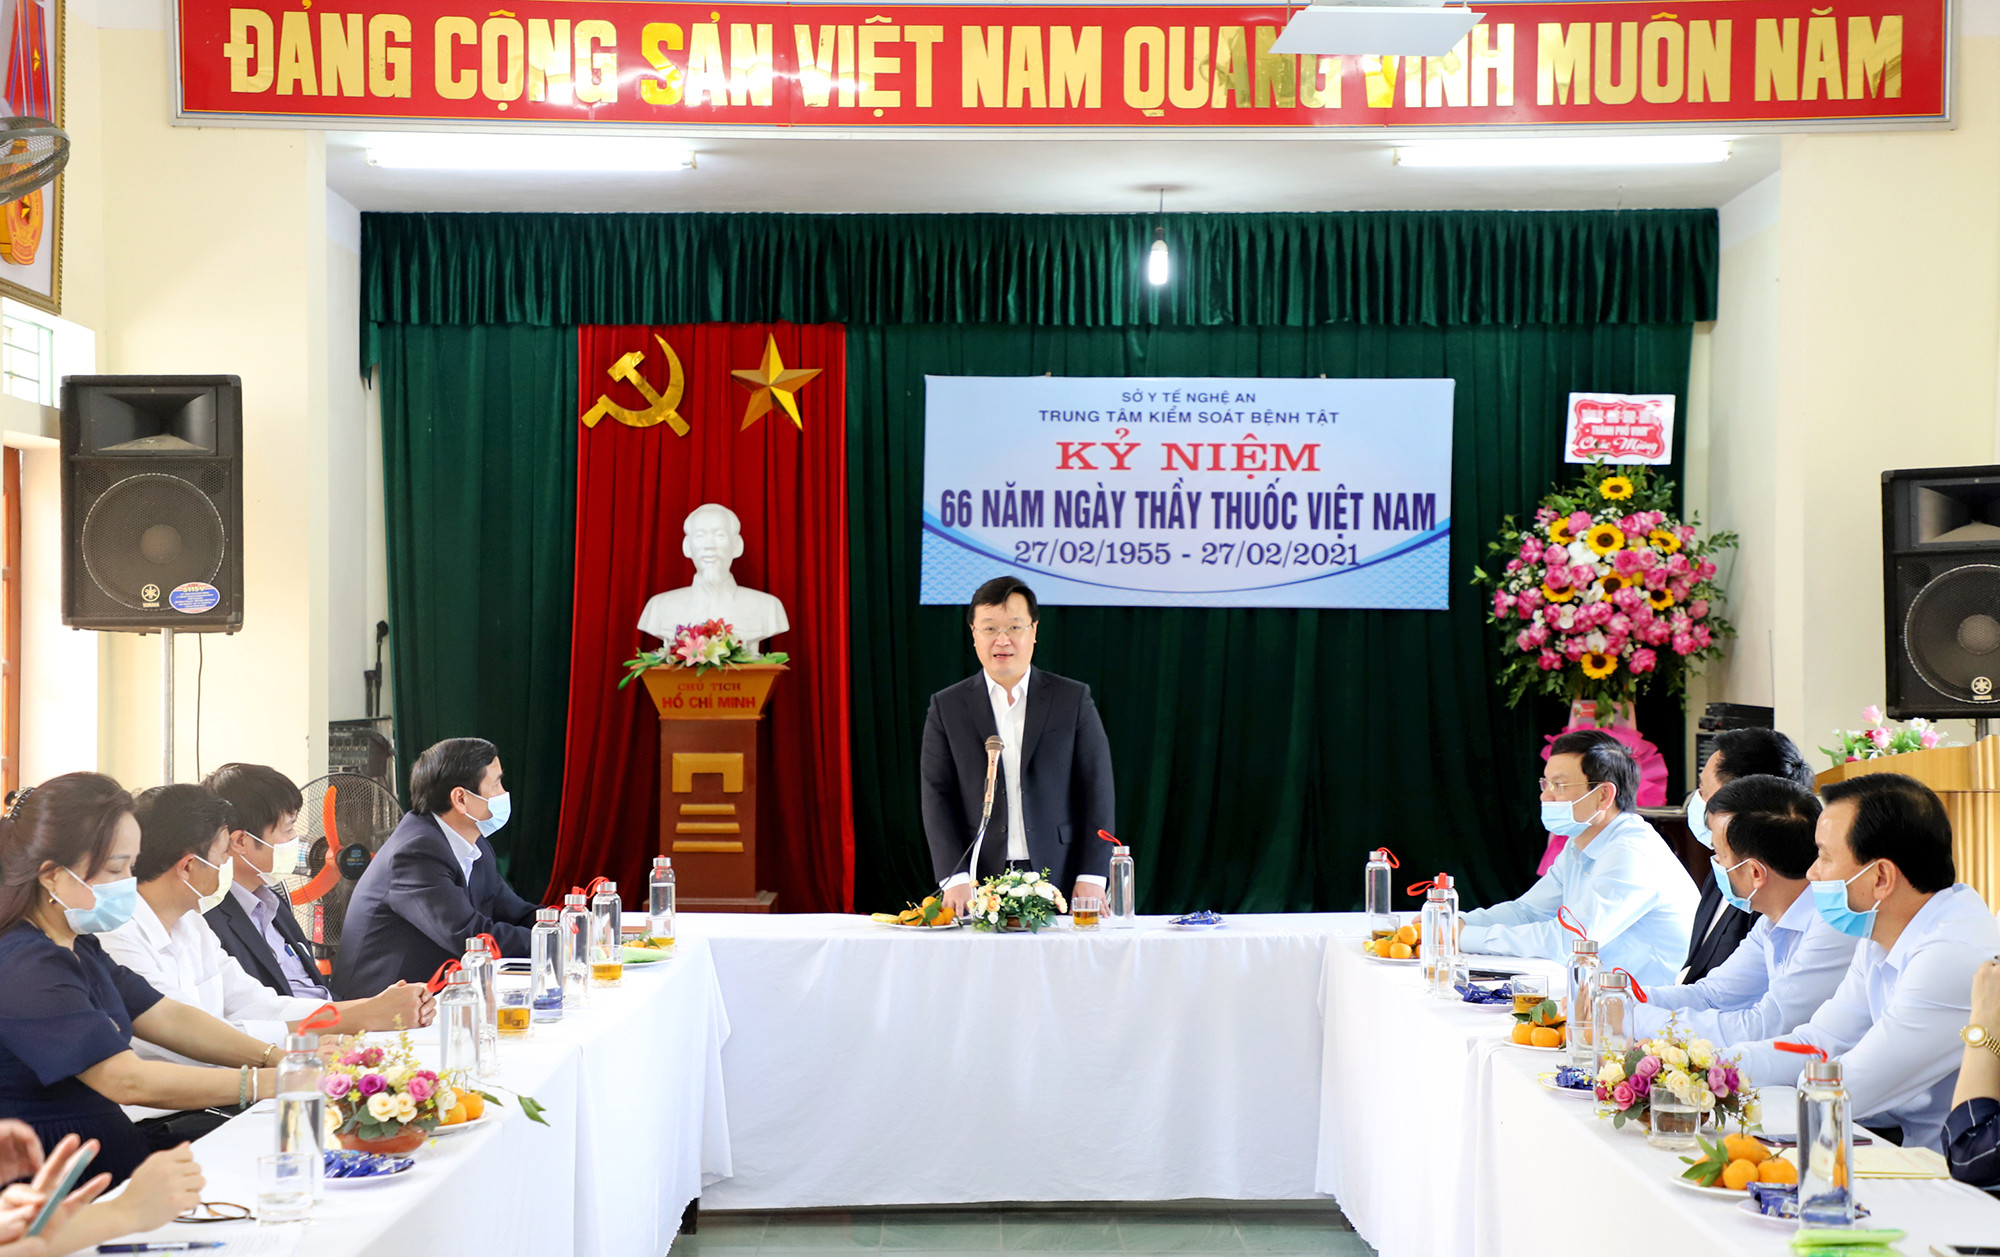 Đồng chí Nguyễn Đức Trung - Chủ tịch UBND tỉnh đánh giá cao vai trò của Trung tâm CDC tỉnh trong công tác phòng, chống dịch Covid-19. Ảnh: Phạm Bằng